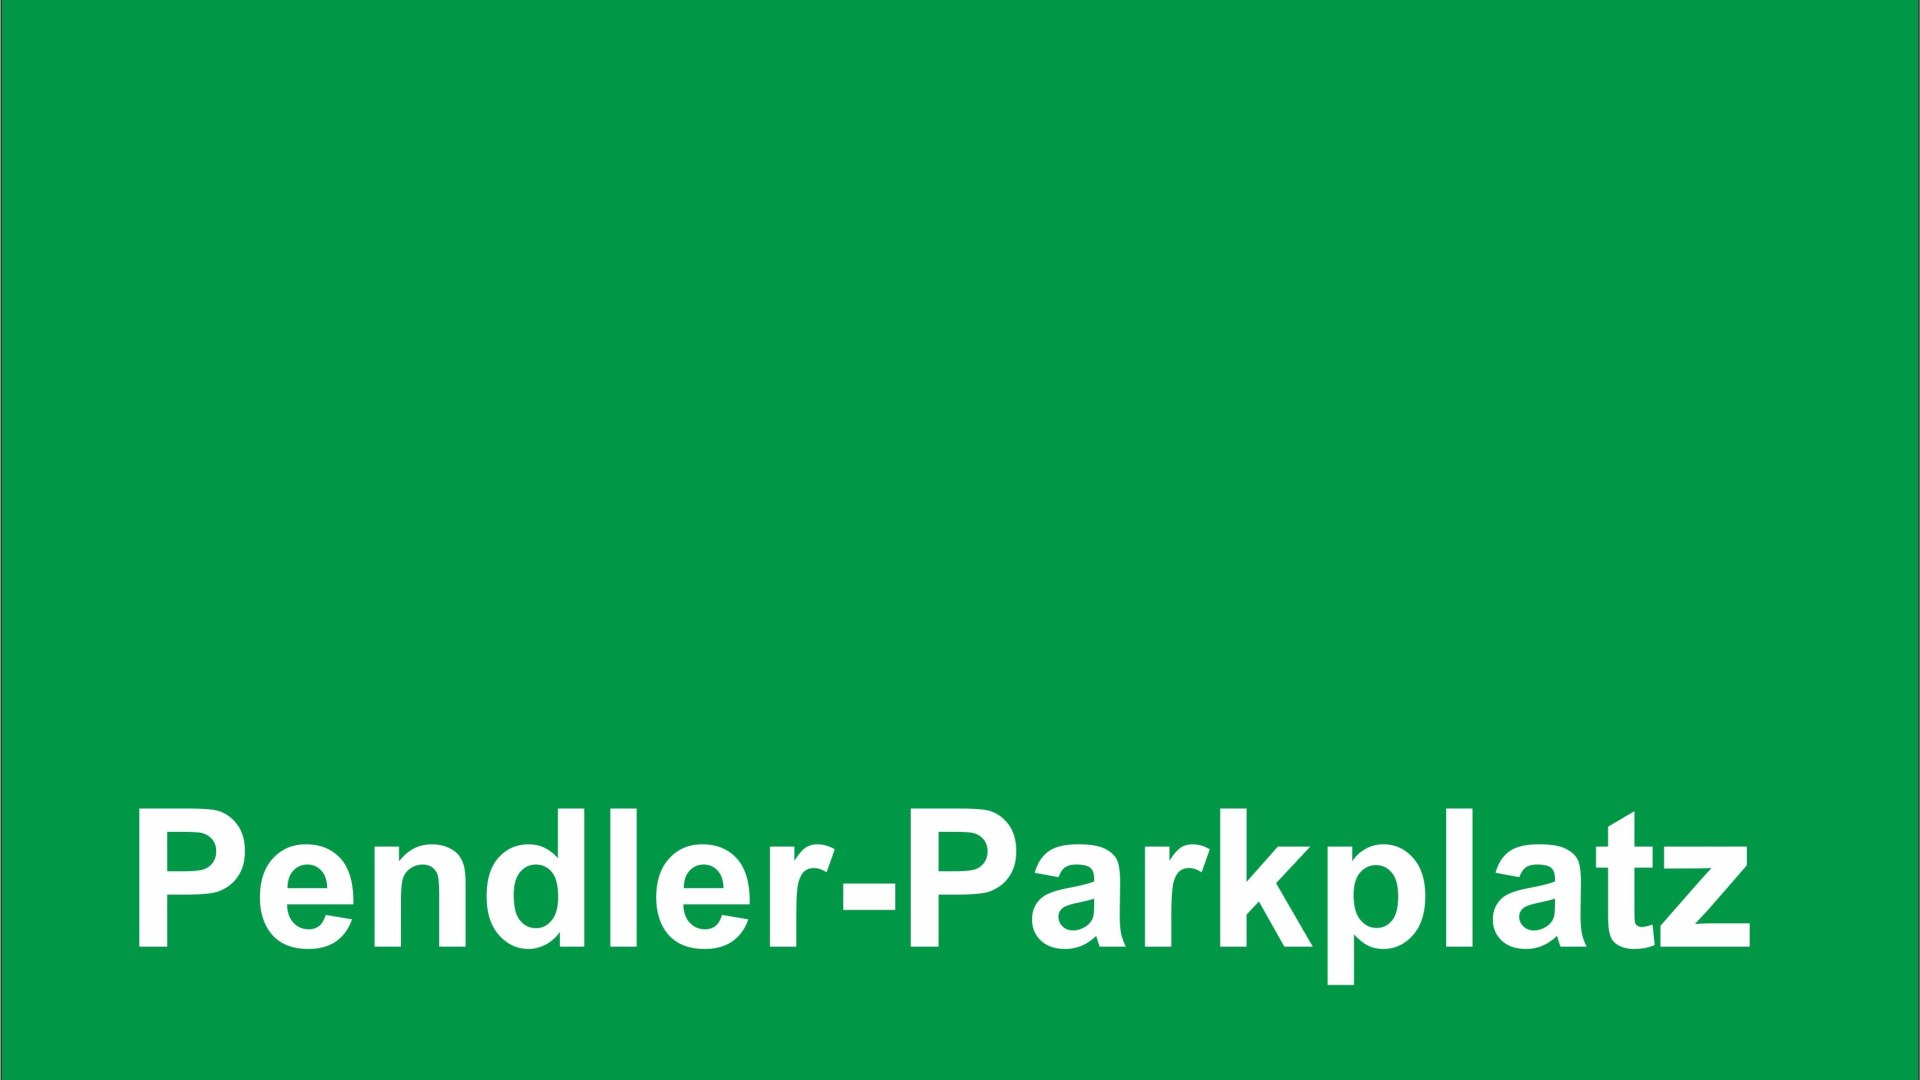 Pendler-Parkplatz | © T. Biersch